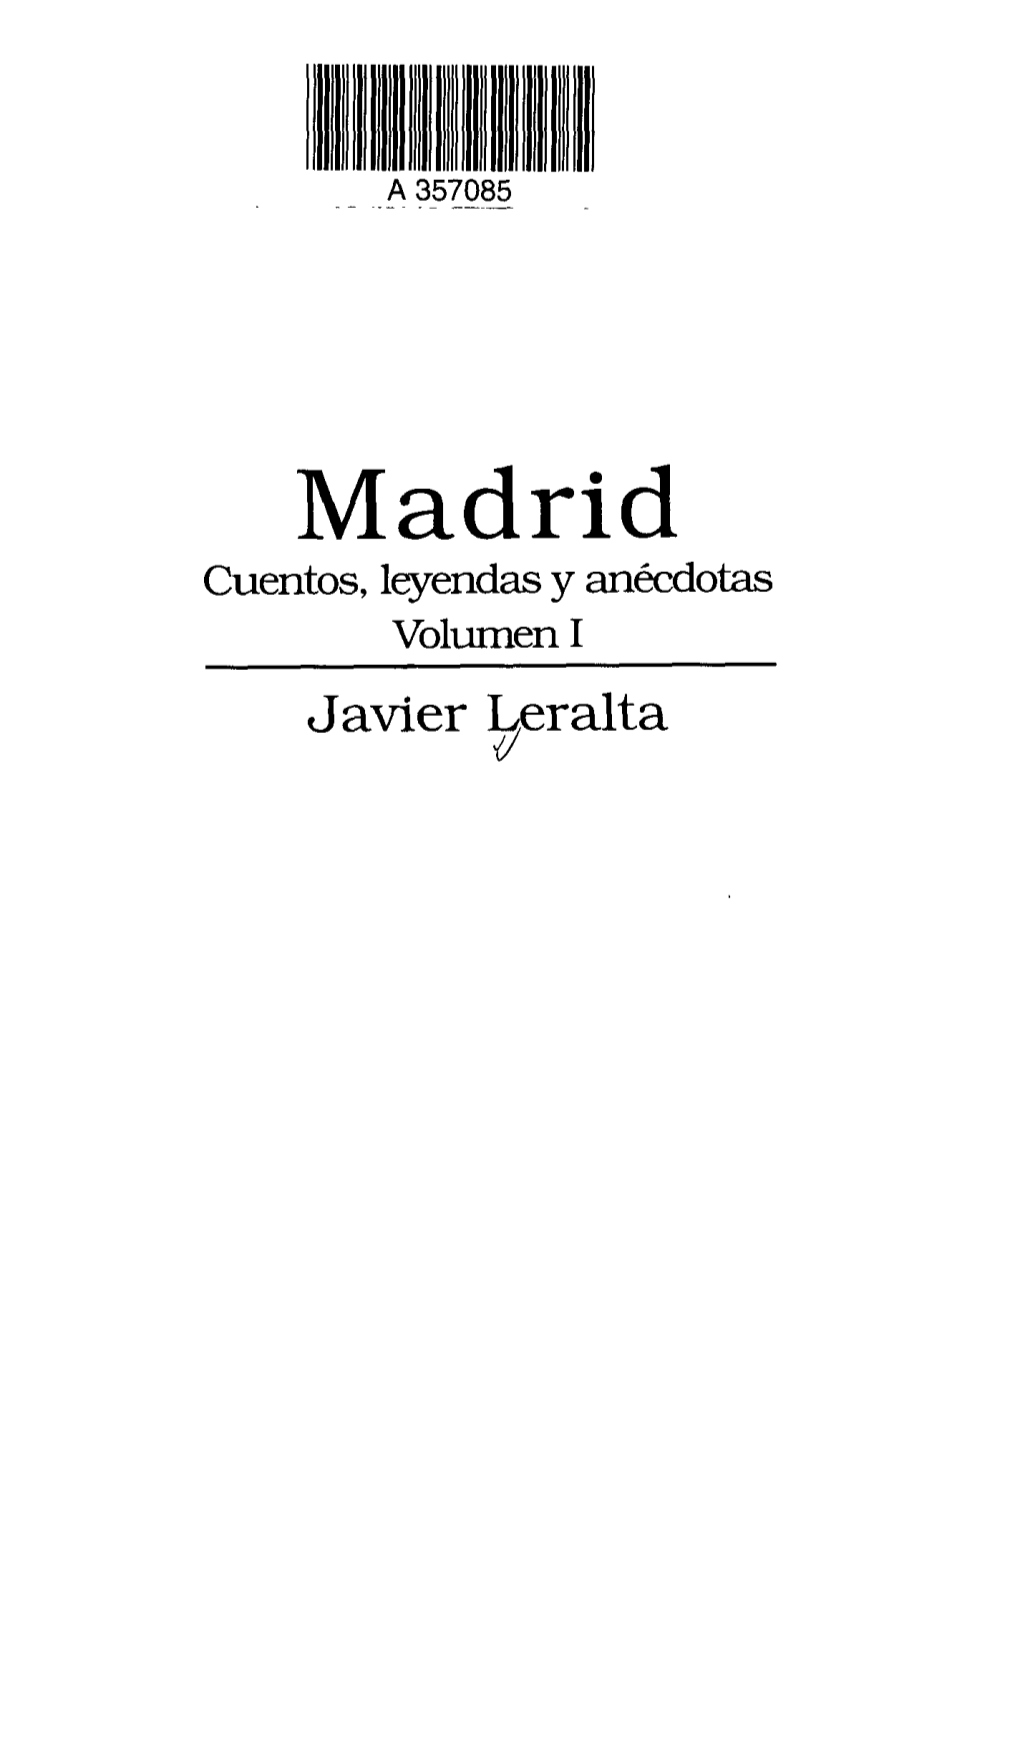 Madrid Cuentos, Leyendas Y Anécdotas Volumen I Javier Leralta CONTENIDO